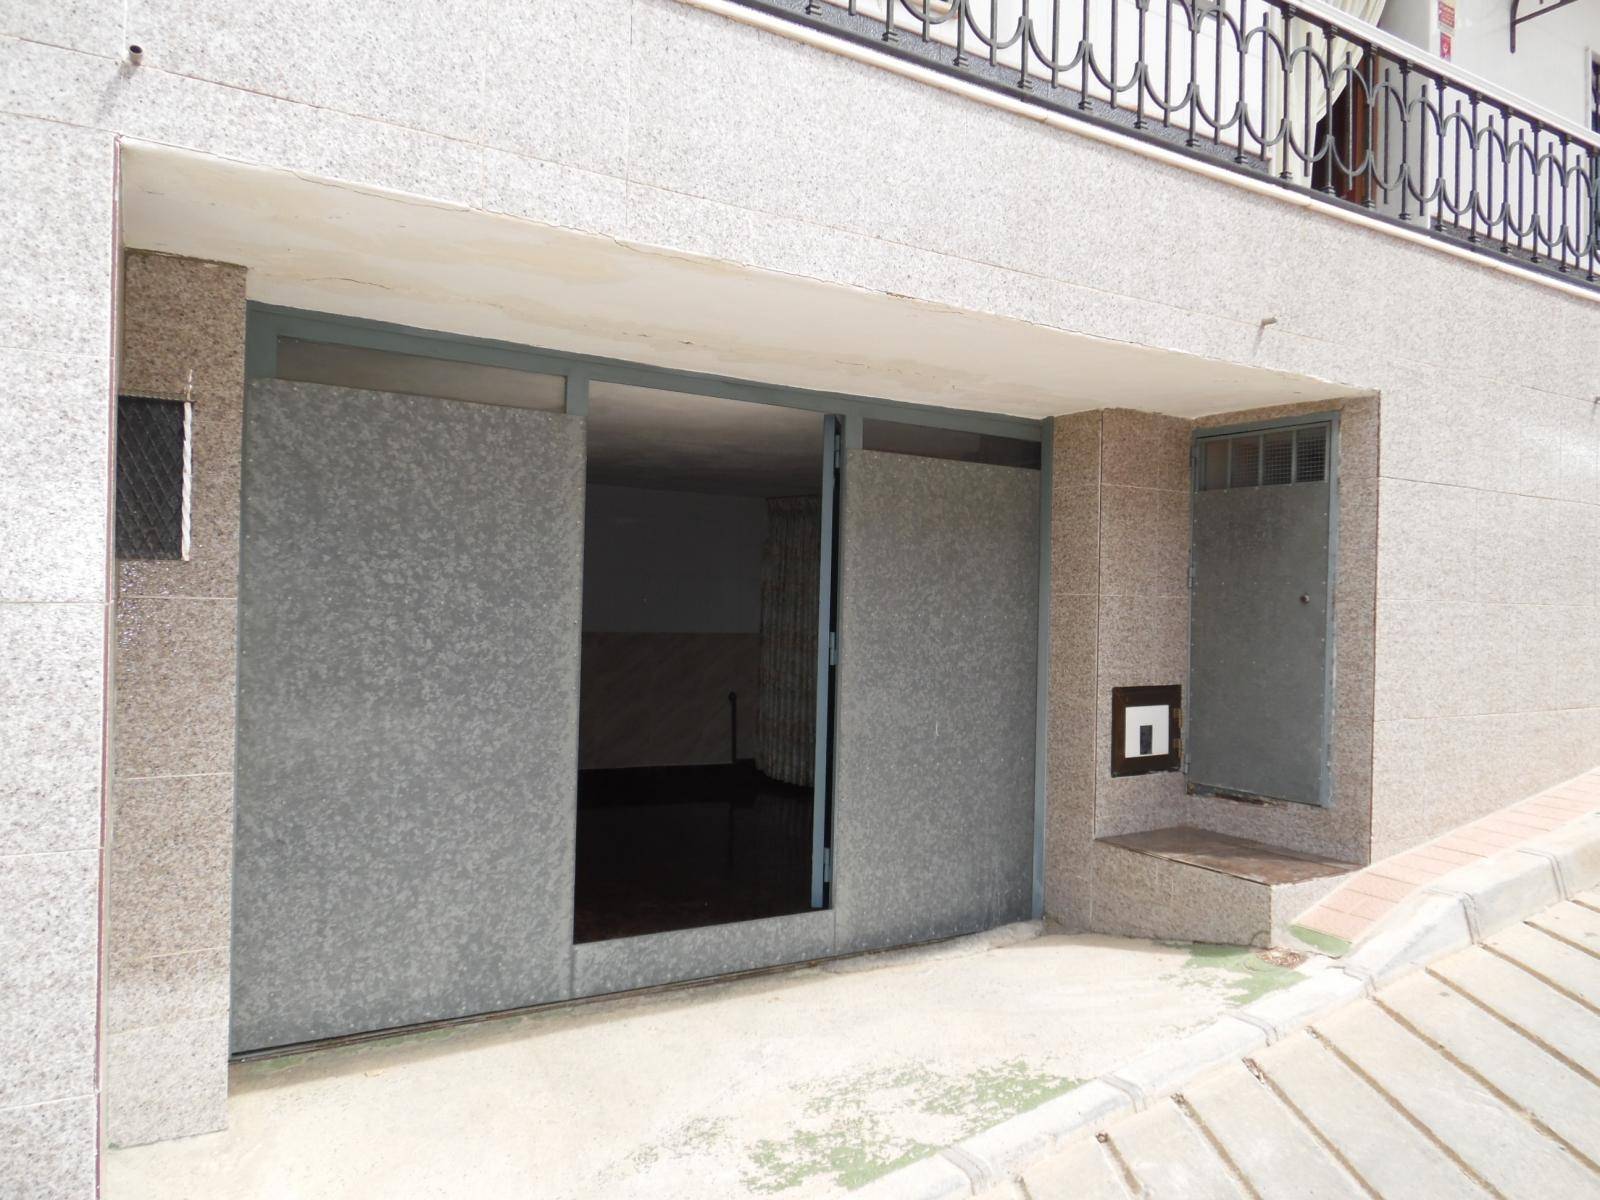 VYHRAZENO 3 ložnice 2 koupelny se 3 úrovněmi bydlení s podkrovní terasou s panoramatickým výhledem